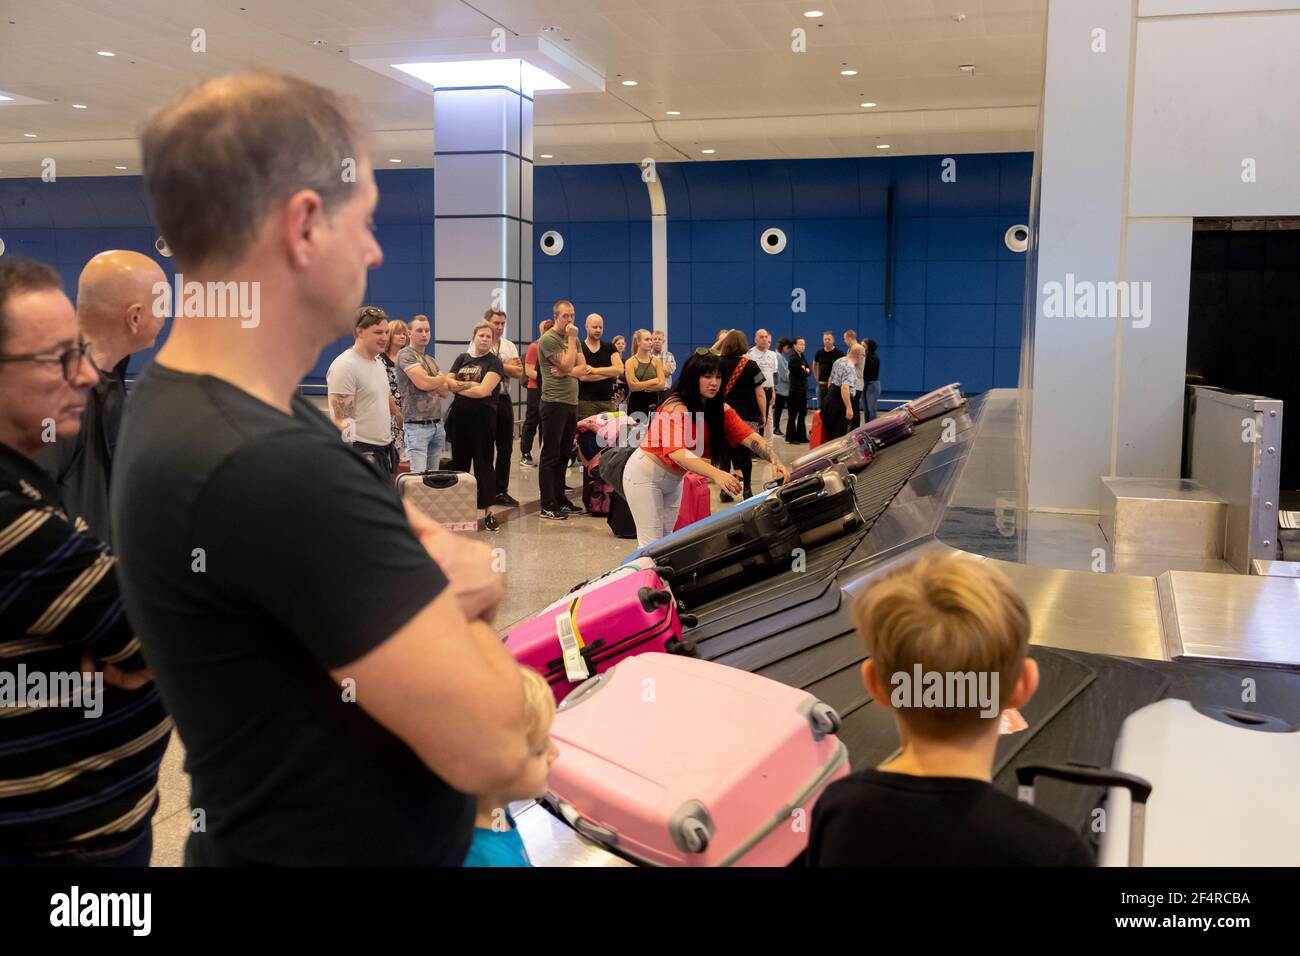 La gente sta aspettando i propri bagagli dopo l'atterraggio. Foto Stock